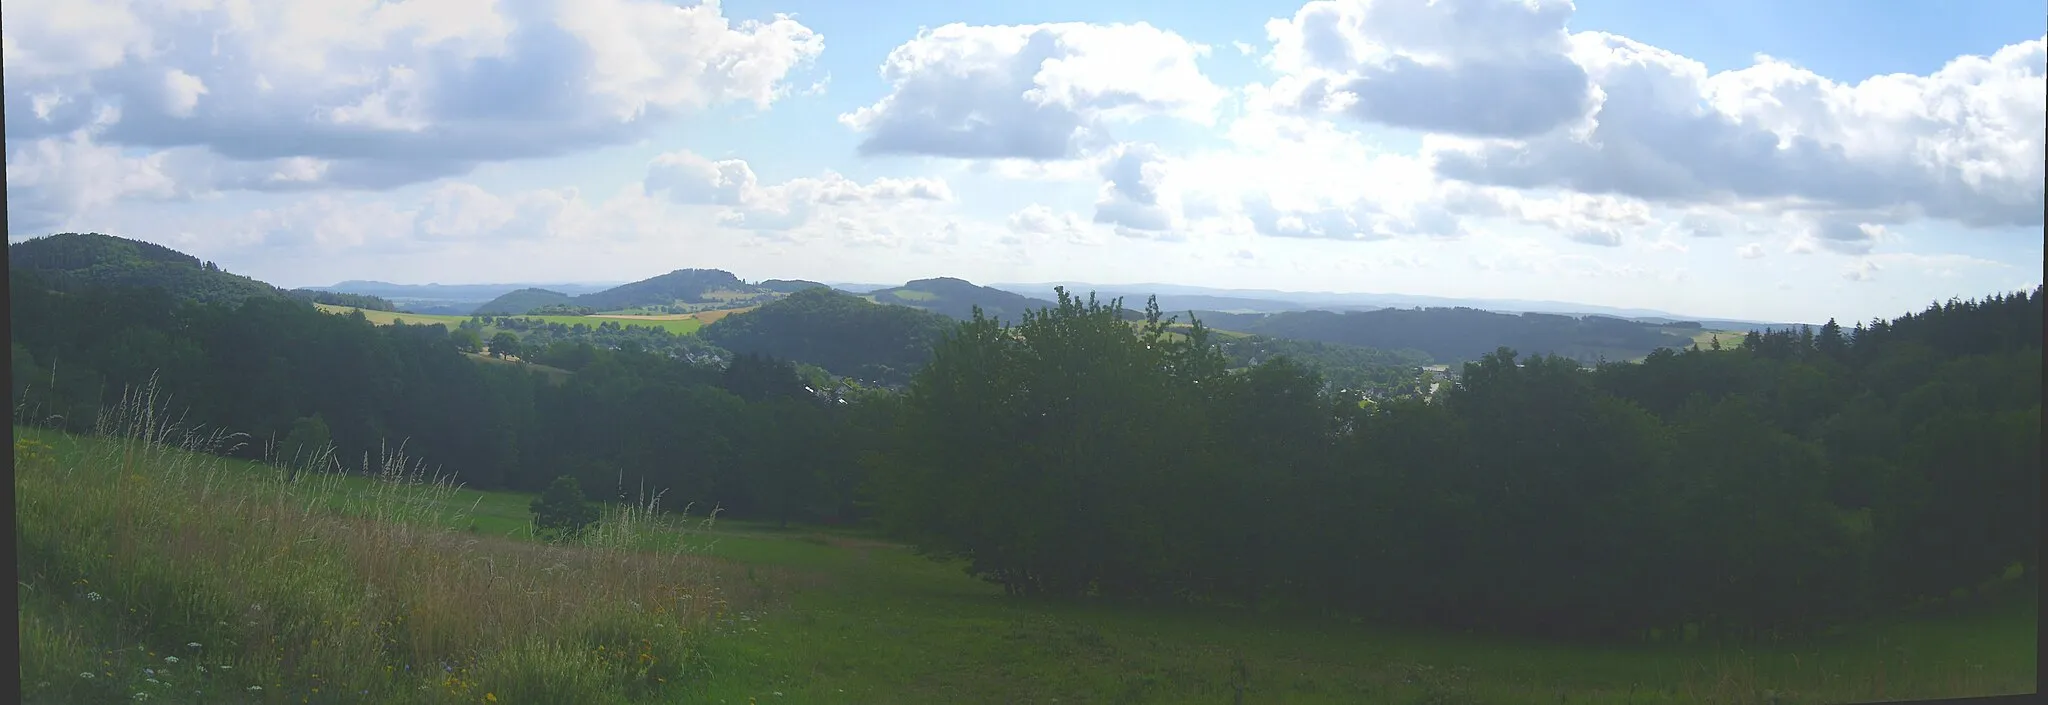 Photo showing: Blick von der Ostflanke des Hilmesbergs (635 m) an der Auffahrt zum Bollerberg (758 m); links der Stolzenberg (624 m), von dem aus sich die unbewaldete Niedrigwasserscheide zwischen Nuhne und Orke zu Stemmberg (572 m, halblinks) und Linsenberg (566 m, Mitte) zieht, nördlich deren das Hallenberger Hügelland in die Medebacher Schiefe Ebene übergeht. Rechts der Bildmitte Hesborn, dahinter der bis 530 m hohe Grat des Galgenbergs. Rechts des Stolzenbergs im Hintergrund der Eisenberg (560 m; 18,6 km), der jedoch größtenteils vom Eschenberg (535 m; 13,9 km) verdeckt wird, rechts davon der Nebengrat Böhlen (495 m; 15,5 km). Im Hintergrund der rechten Bildhälfte der Kellerwald, von dem besonders das Hohe Lohr (657 m; 31,5 km) hervorsticht.
– siehe Udeuschle